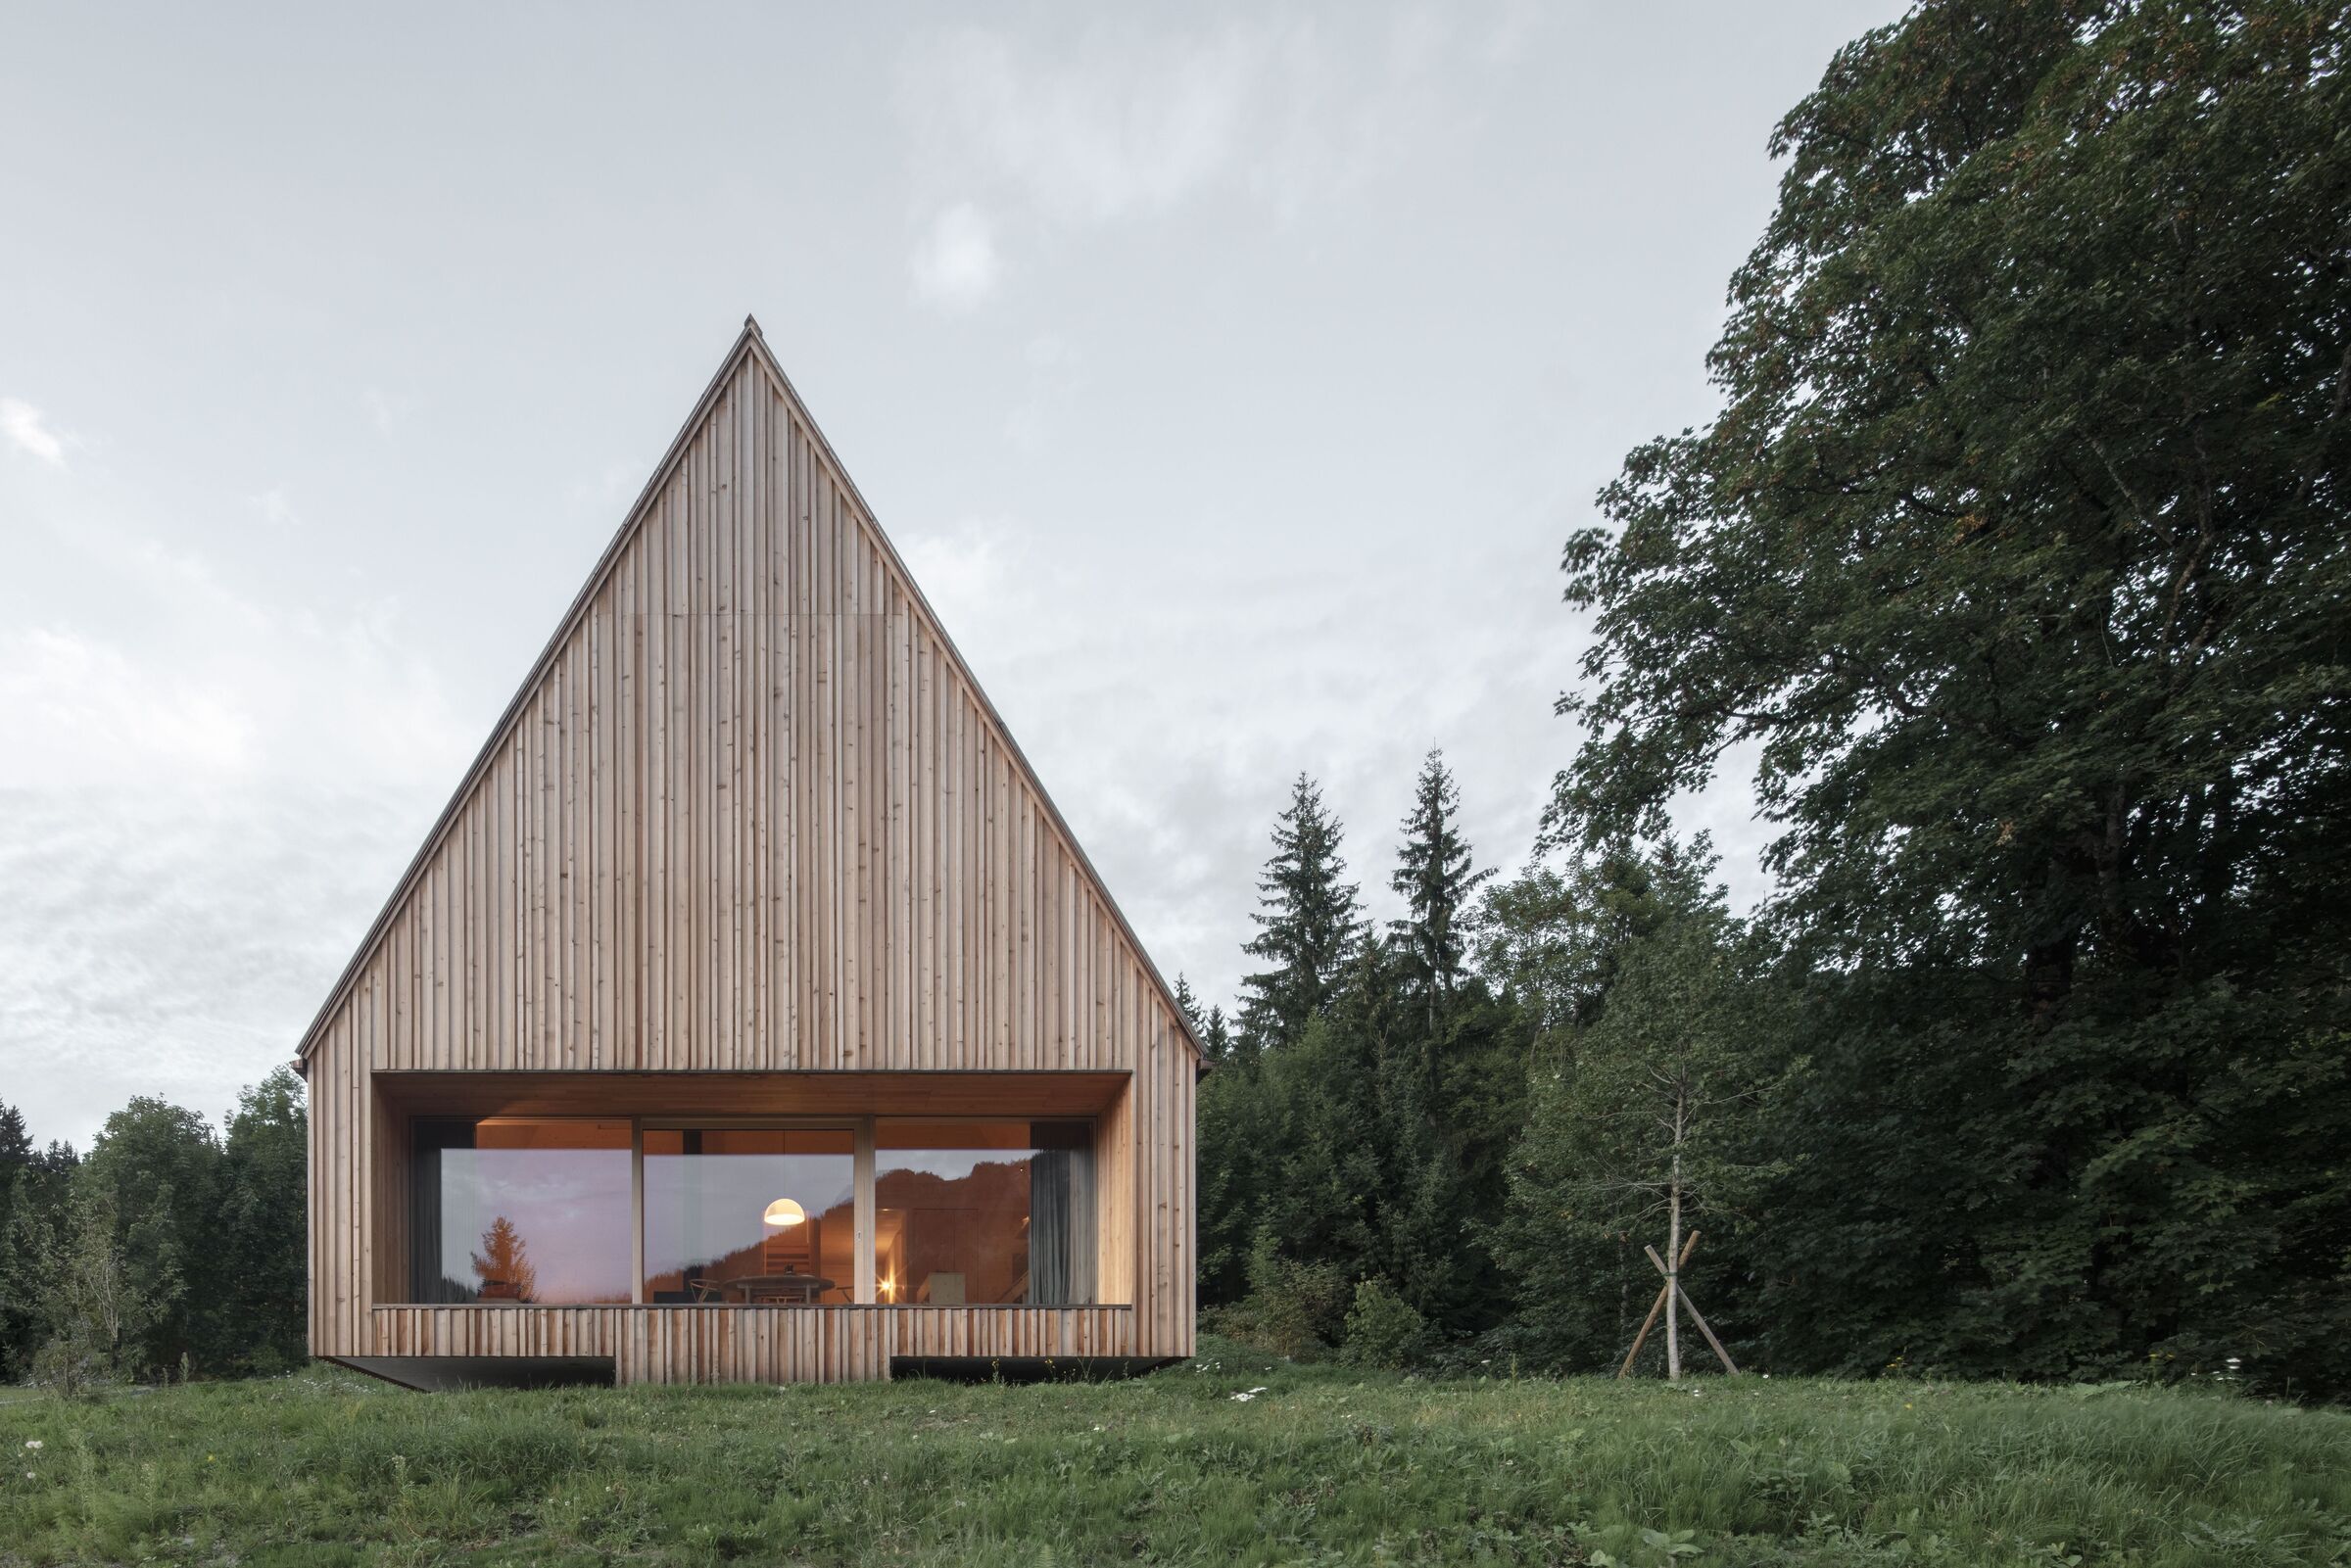 Гостевой домик как уединенное деревянное жилище